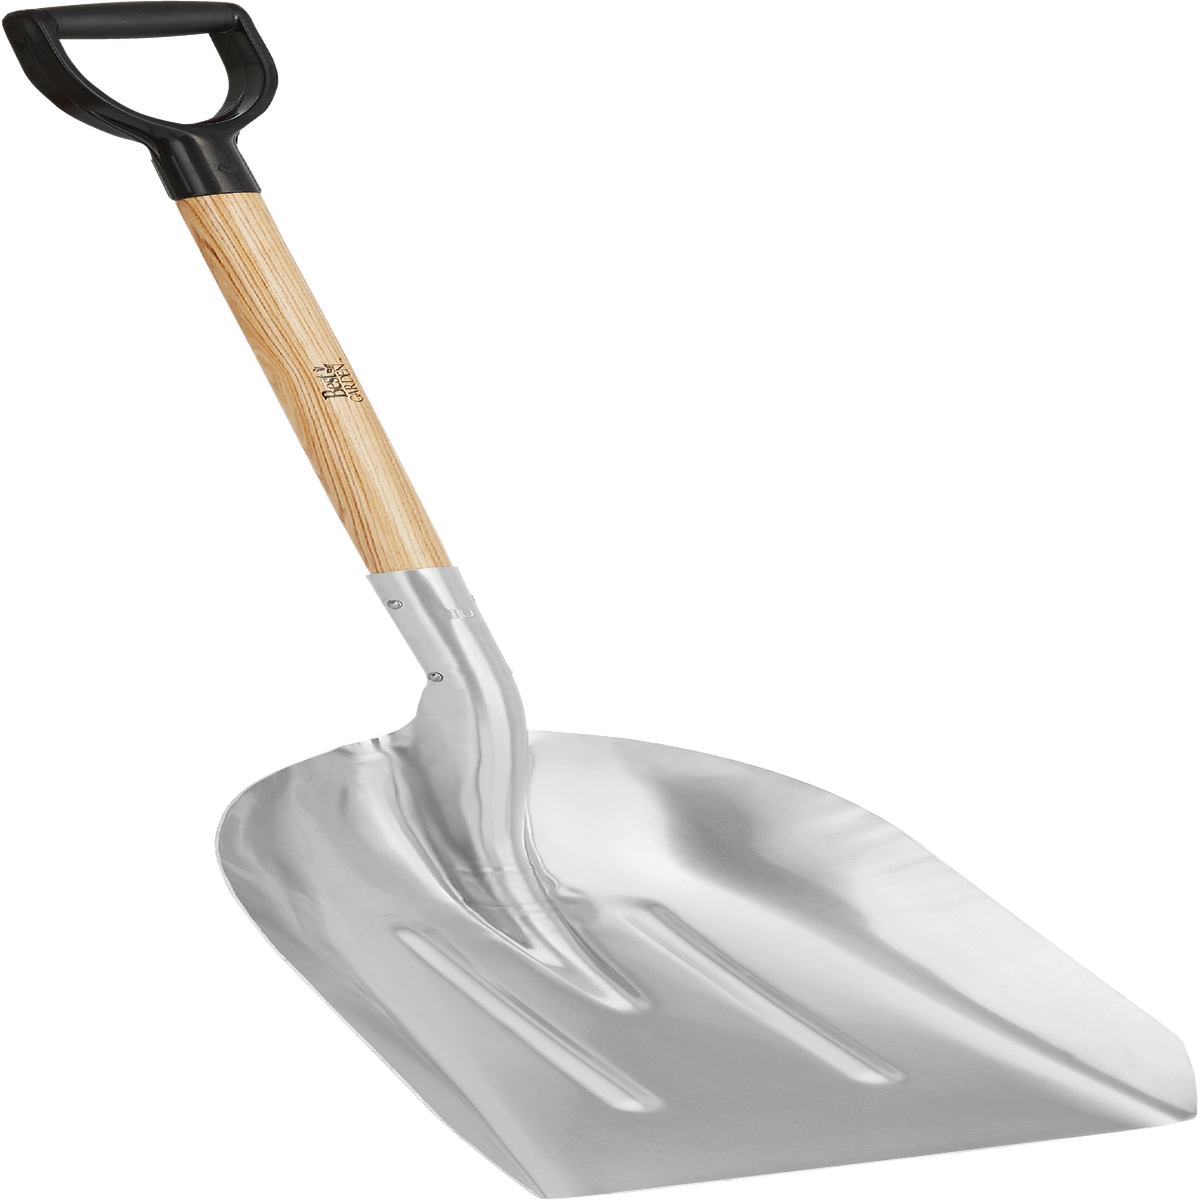 Scoop Shovel